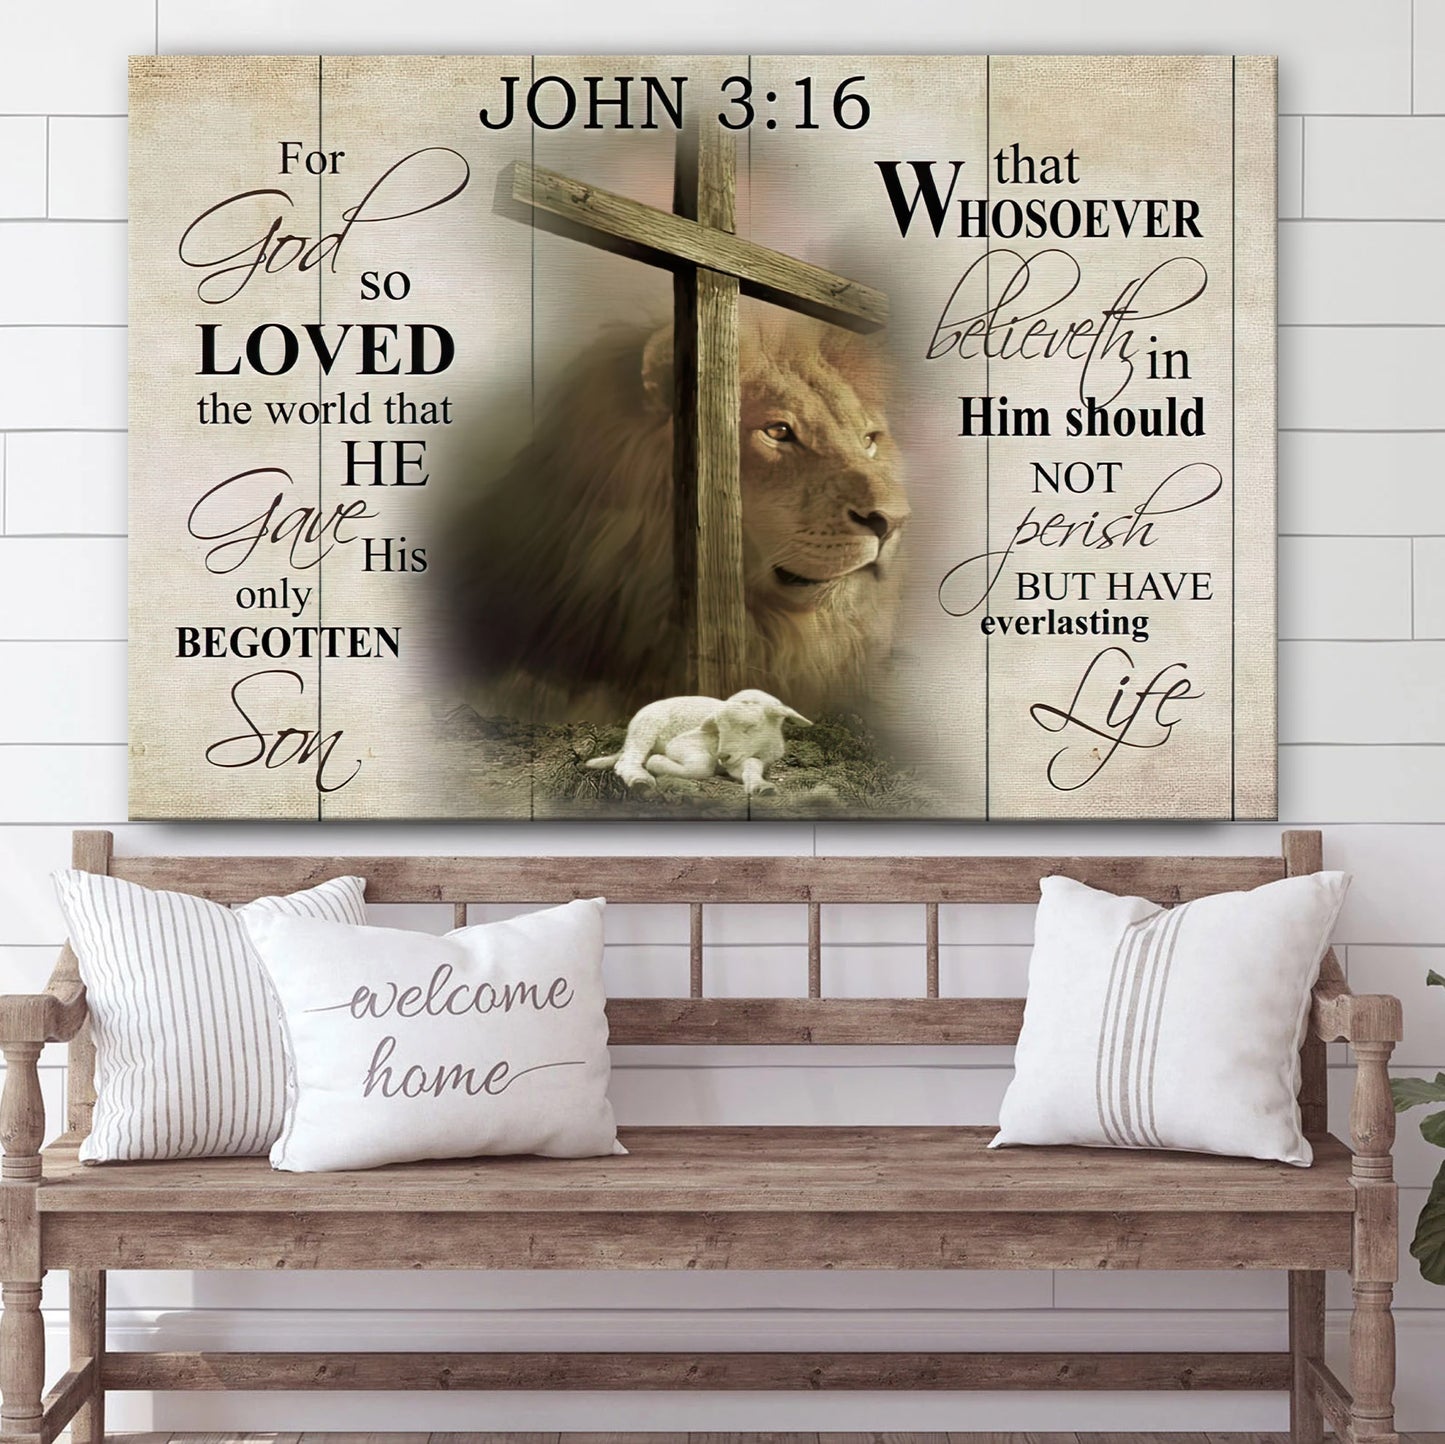 John 3 16 Christian Wall Art For God so Loved the World Religious Poster